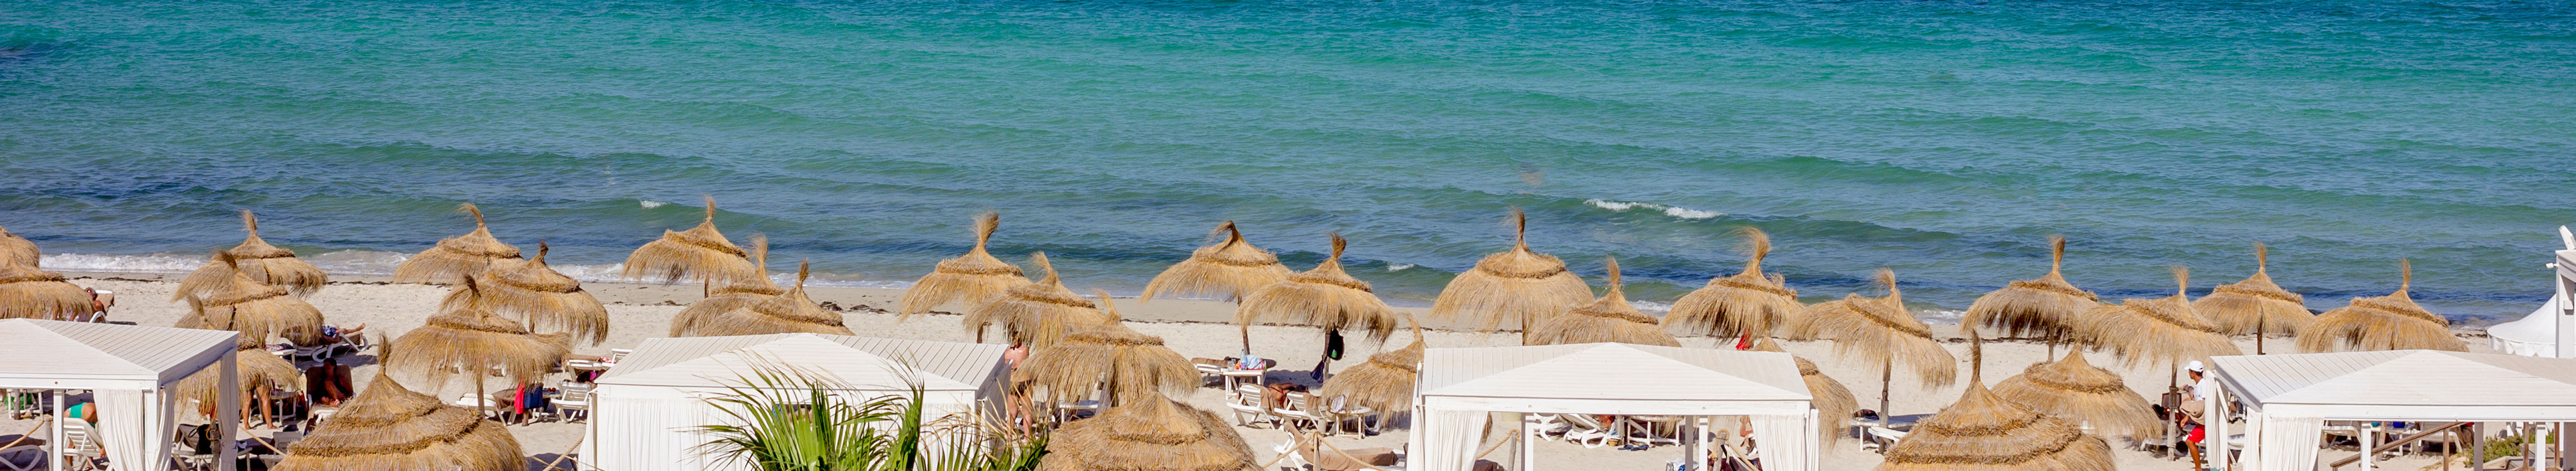 Ein Strand auf der Insel Djerba während eines Urlaubs.